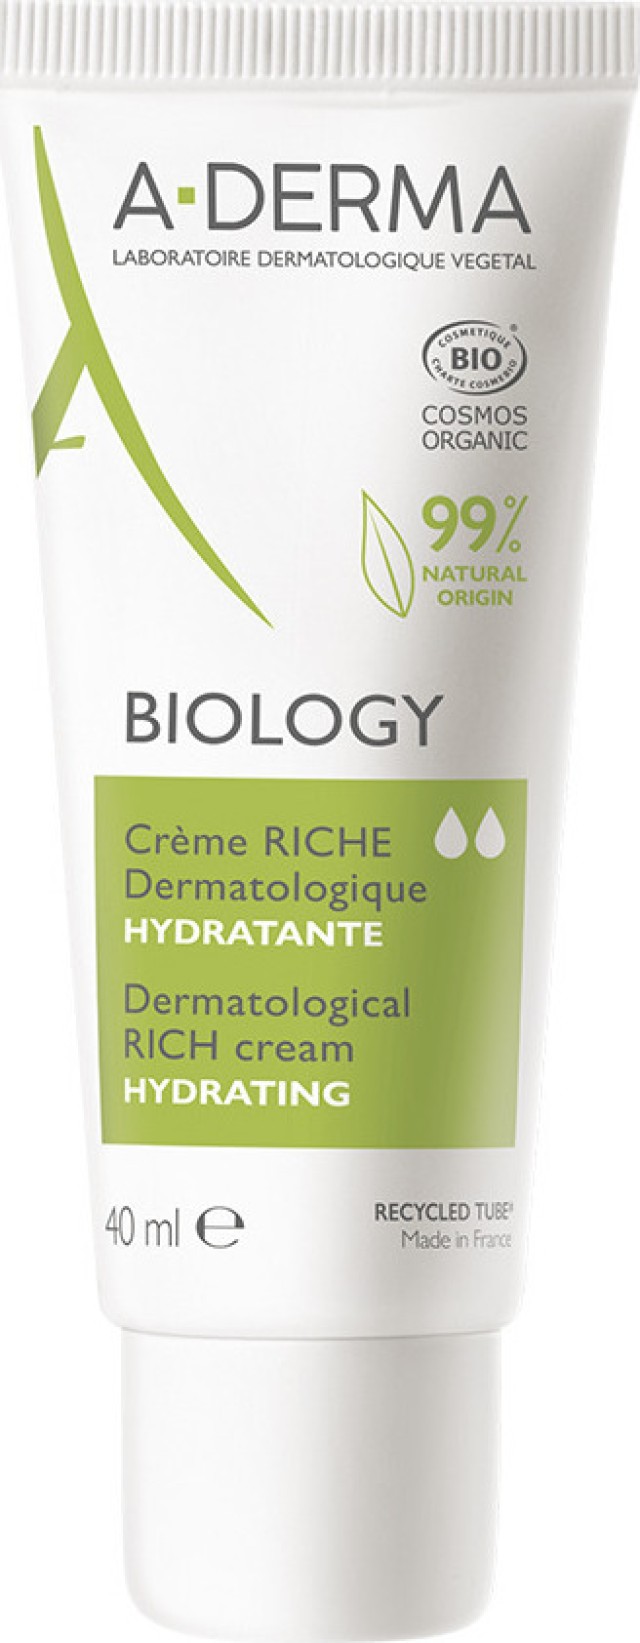 A-DERMA Biology Dermatological Riche Cream Hydrating Πλούσια Ενυδατική Κρέμα Για Το Ξηρό Εύθραυστο Δέρμα, 40ml